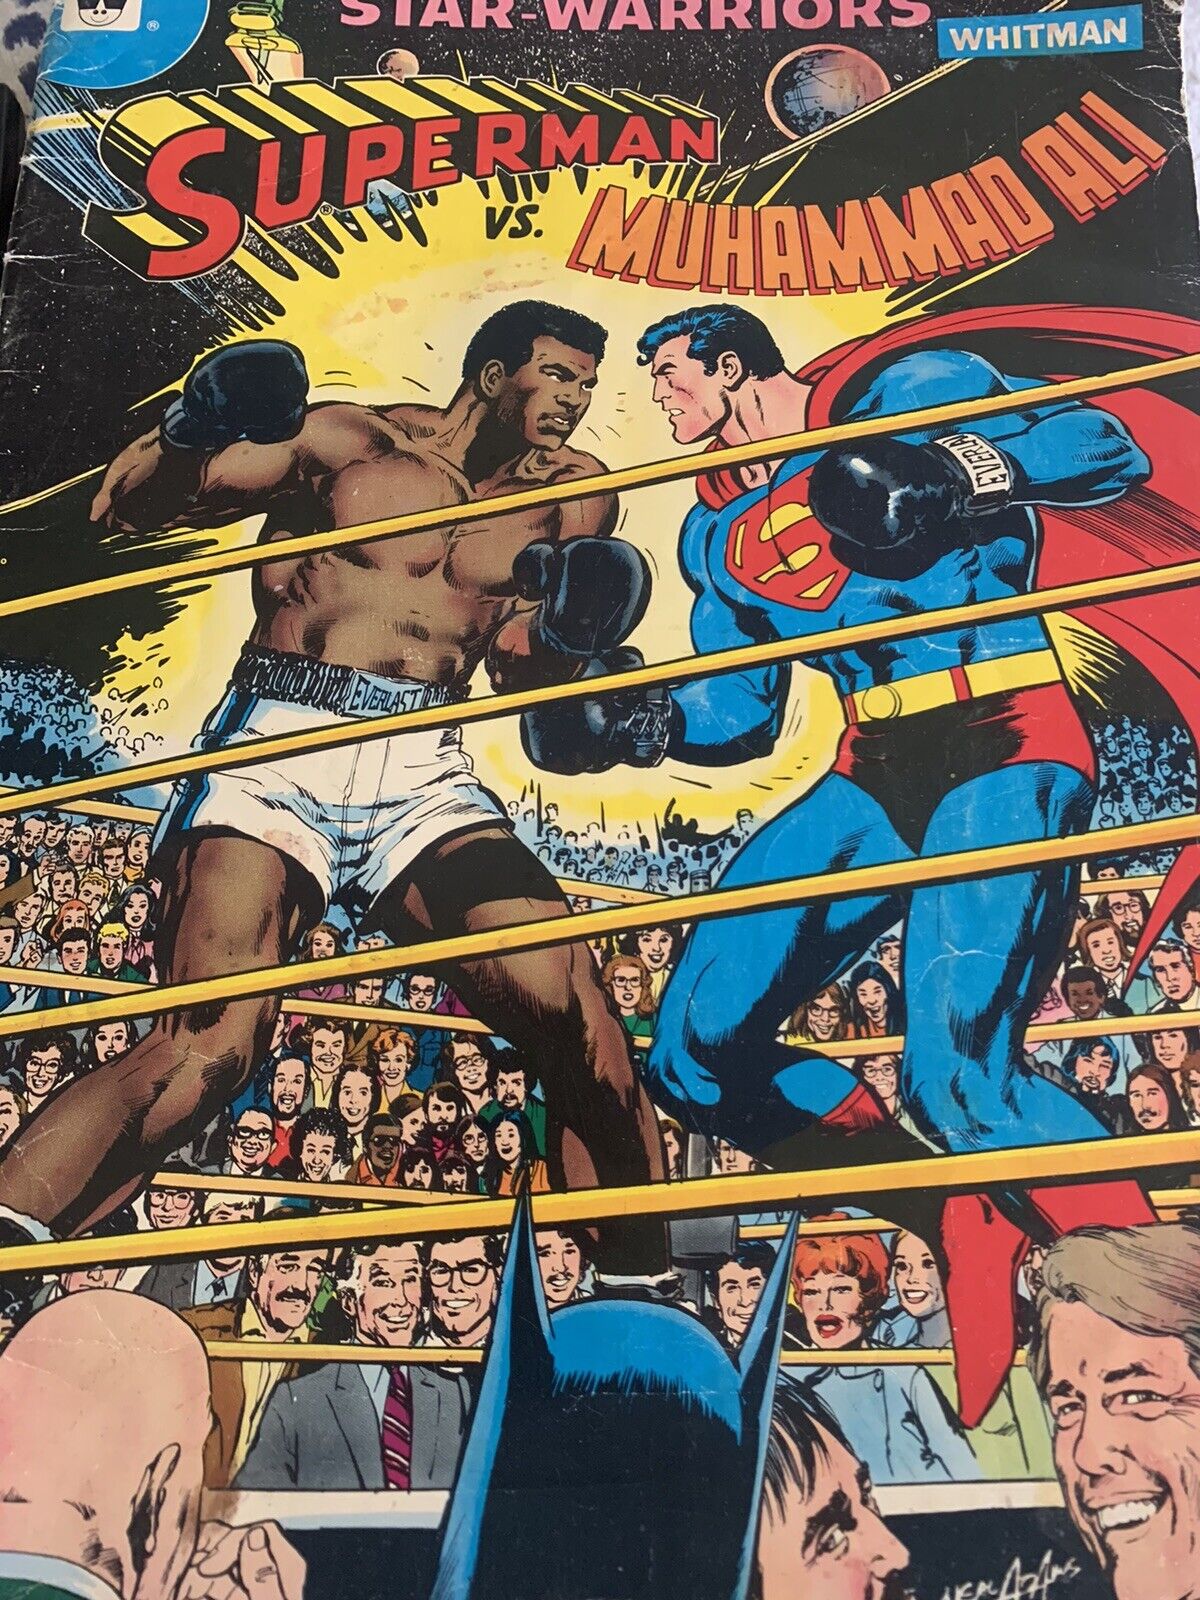 1978 Edition Superman vs. Muhammad Ali Whitman Comic Book